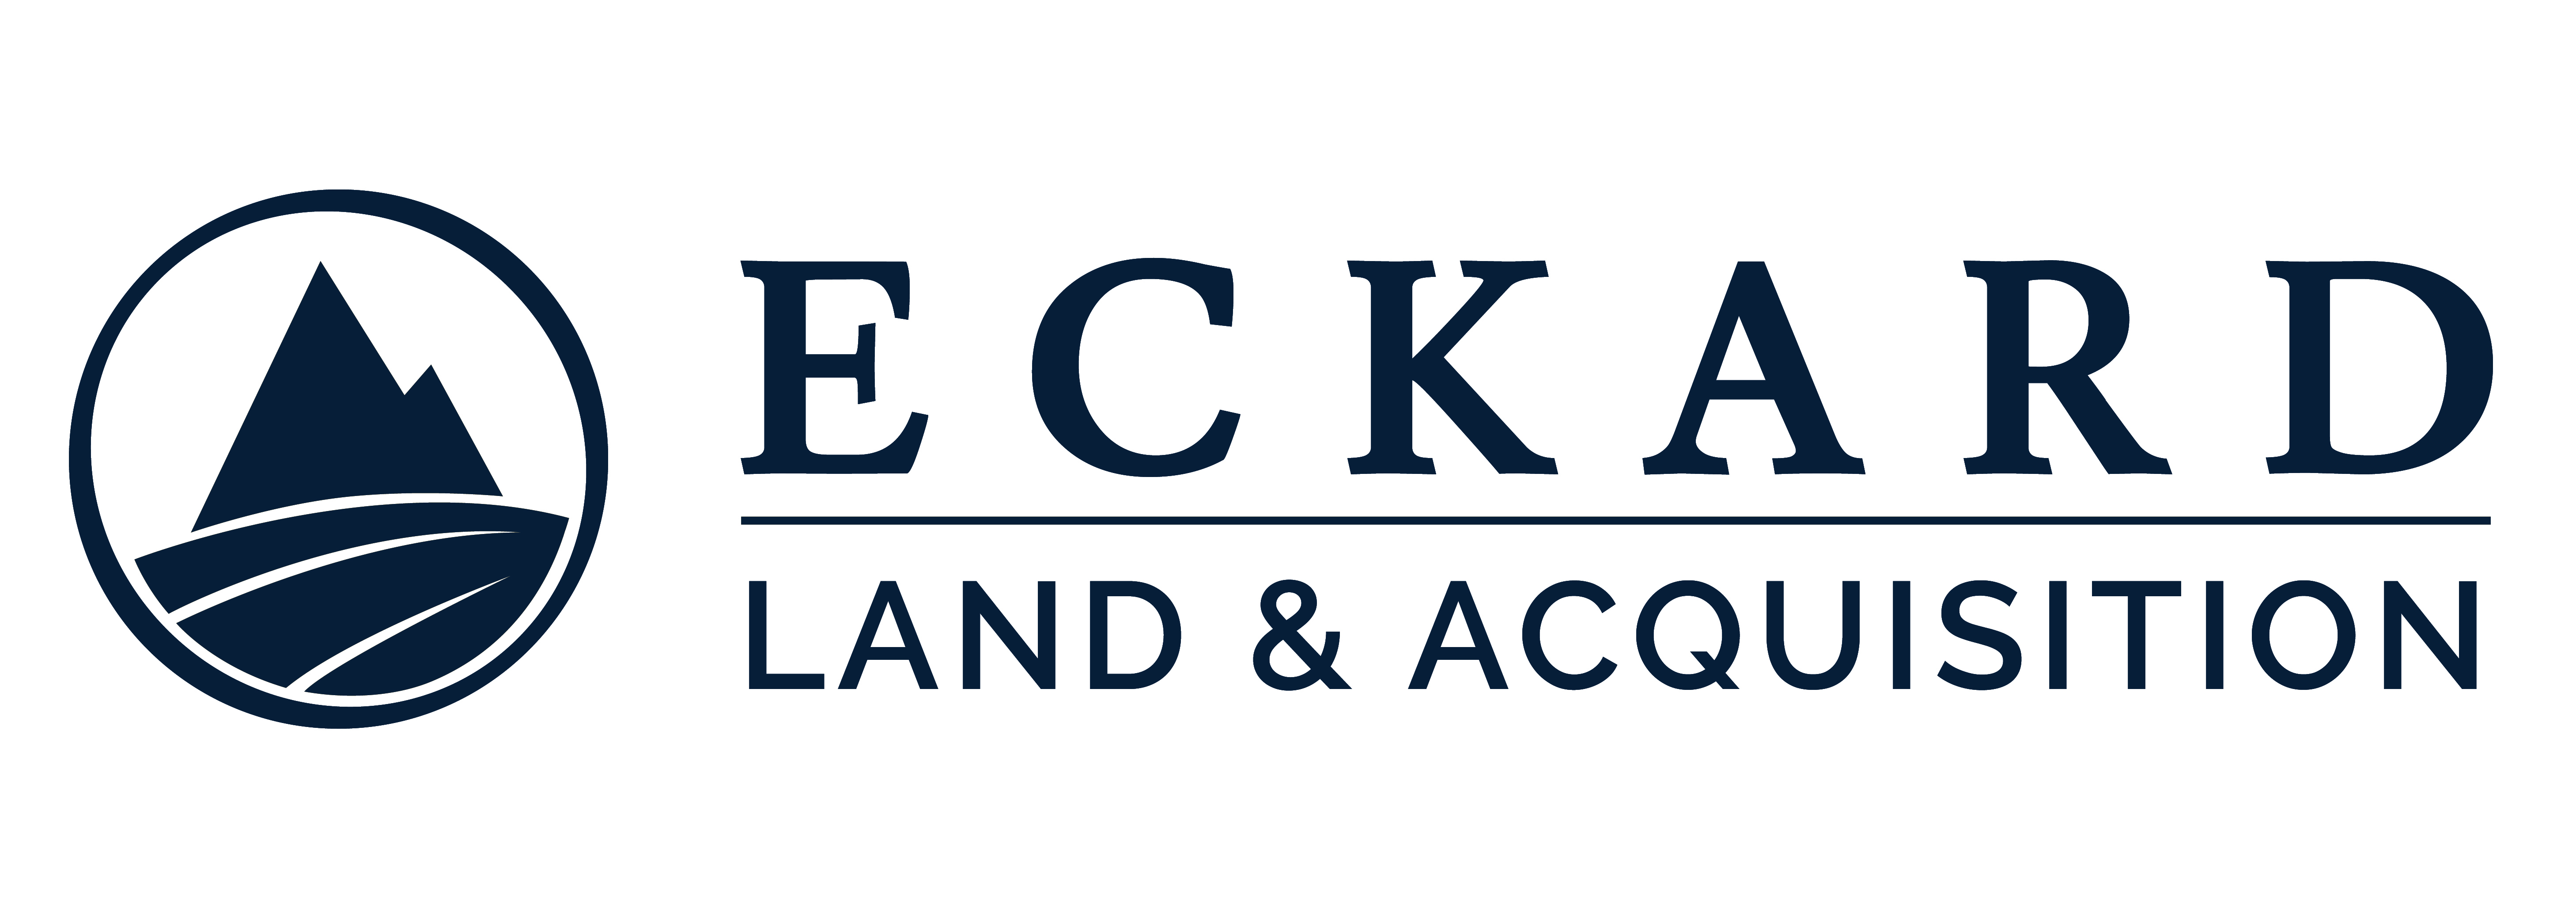 Eckard Land & Acquisition, LLC